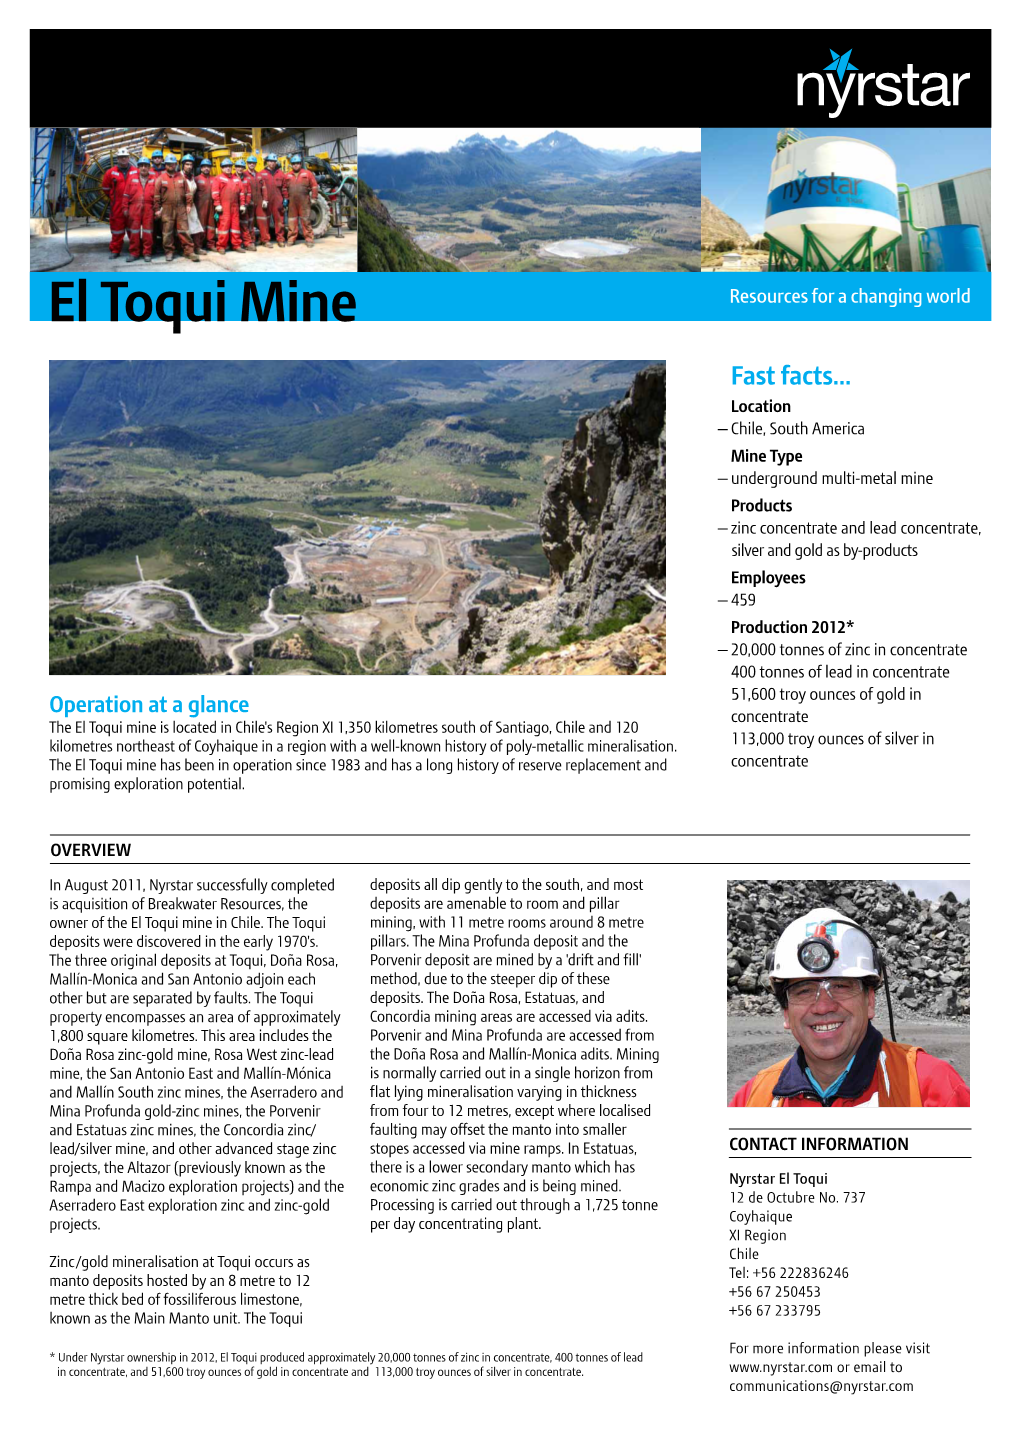 El Toqui Mine